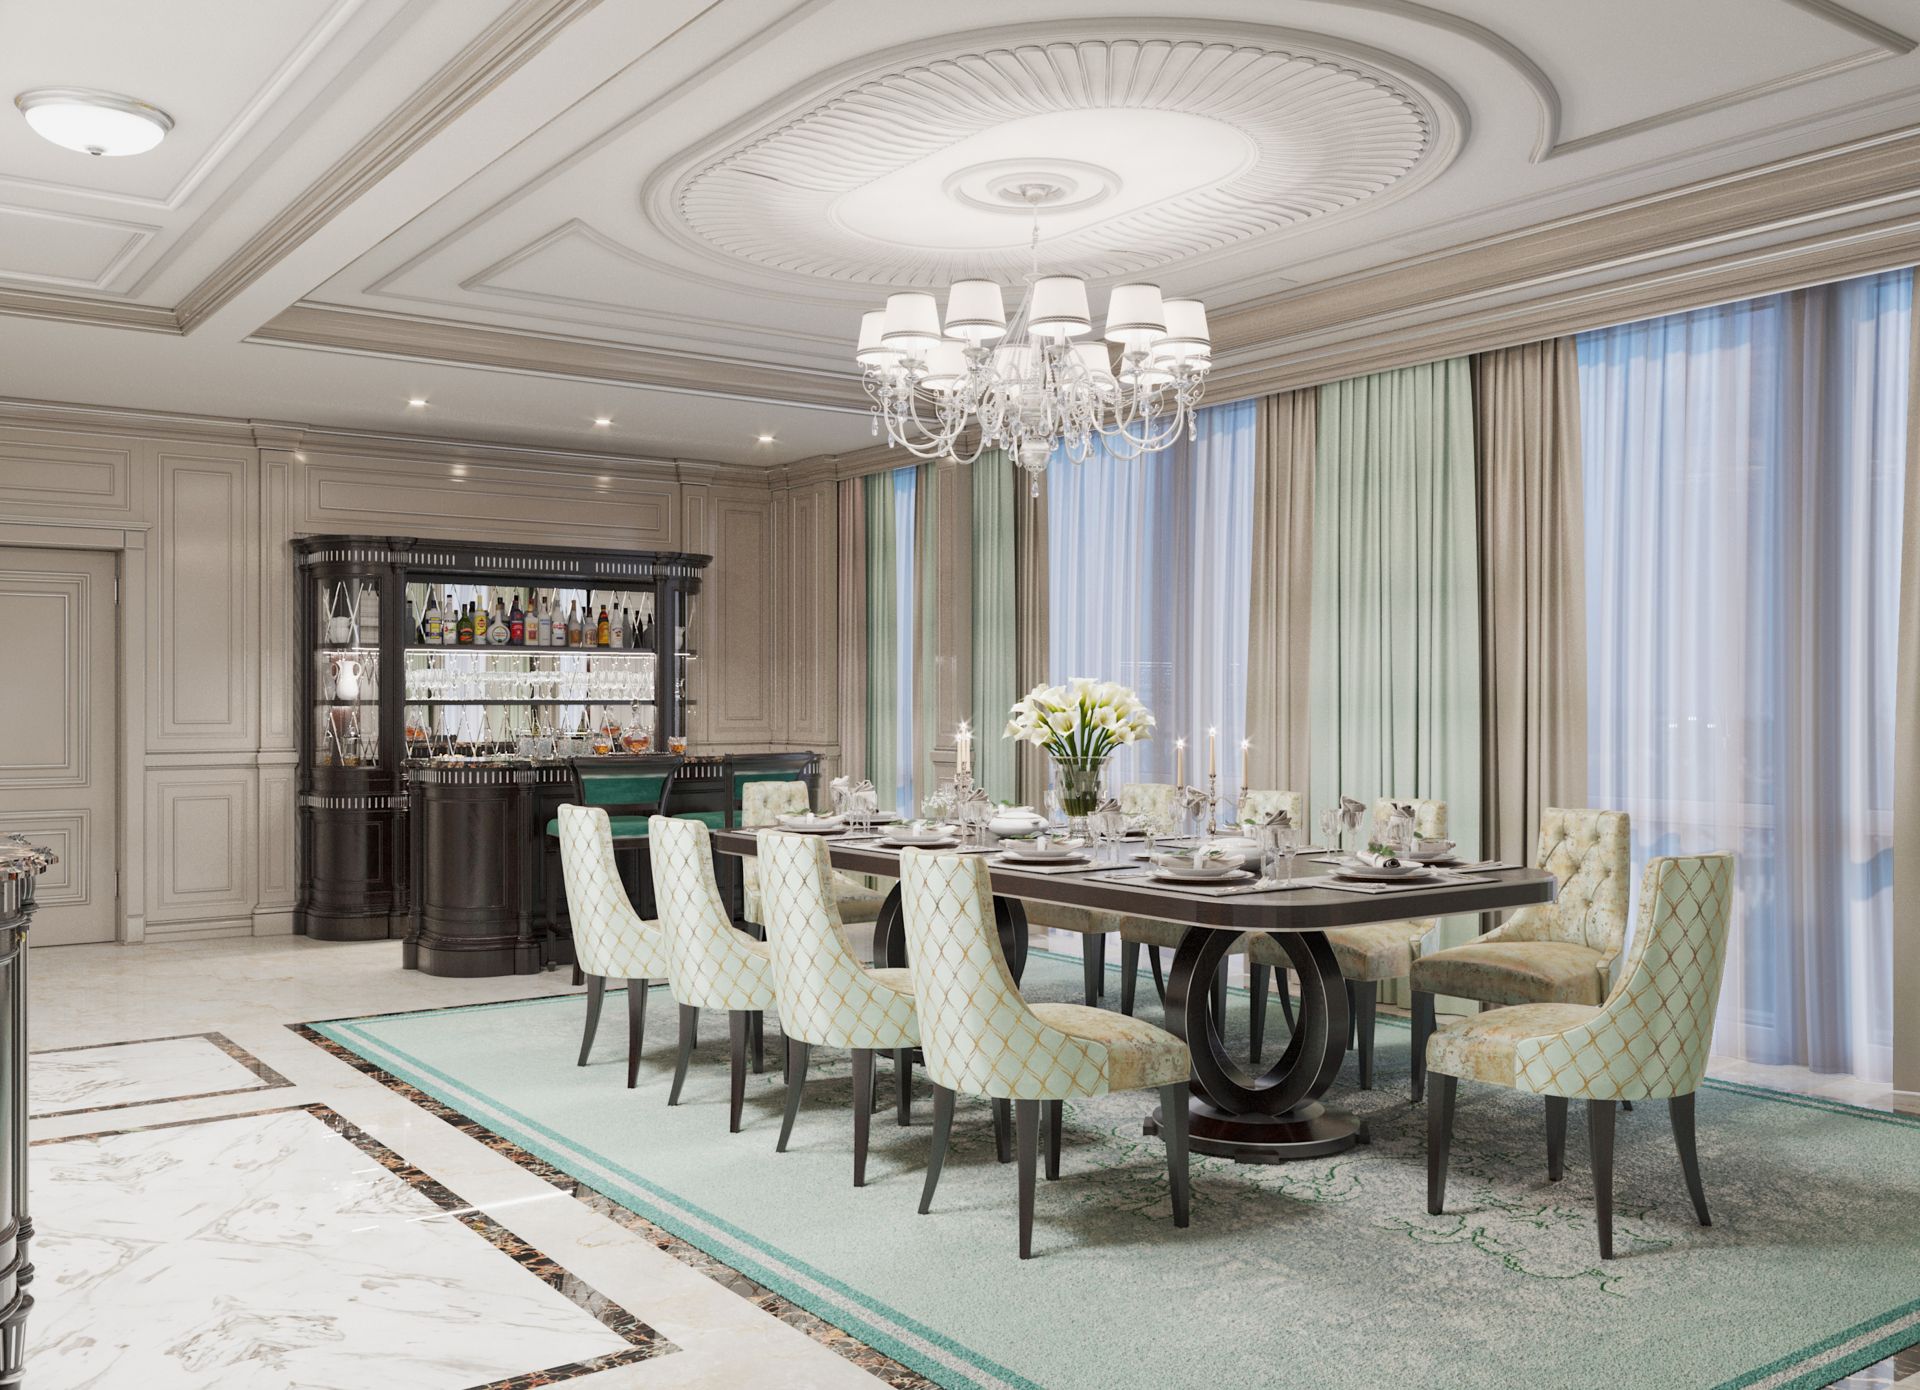 Design, Dining room design in elegant style